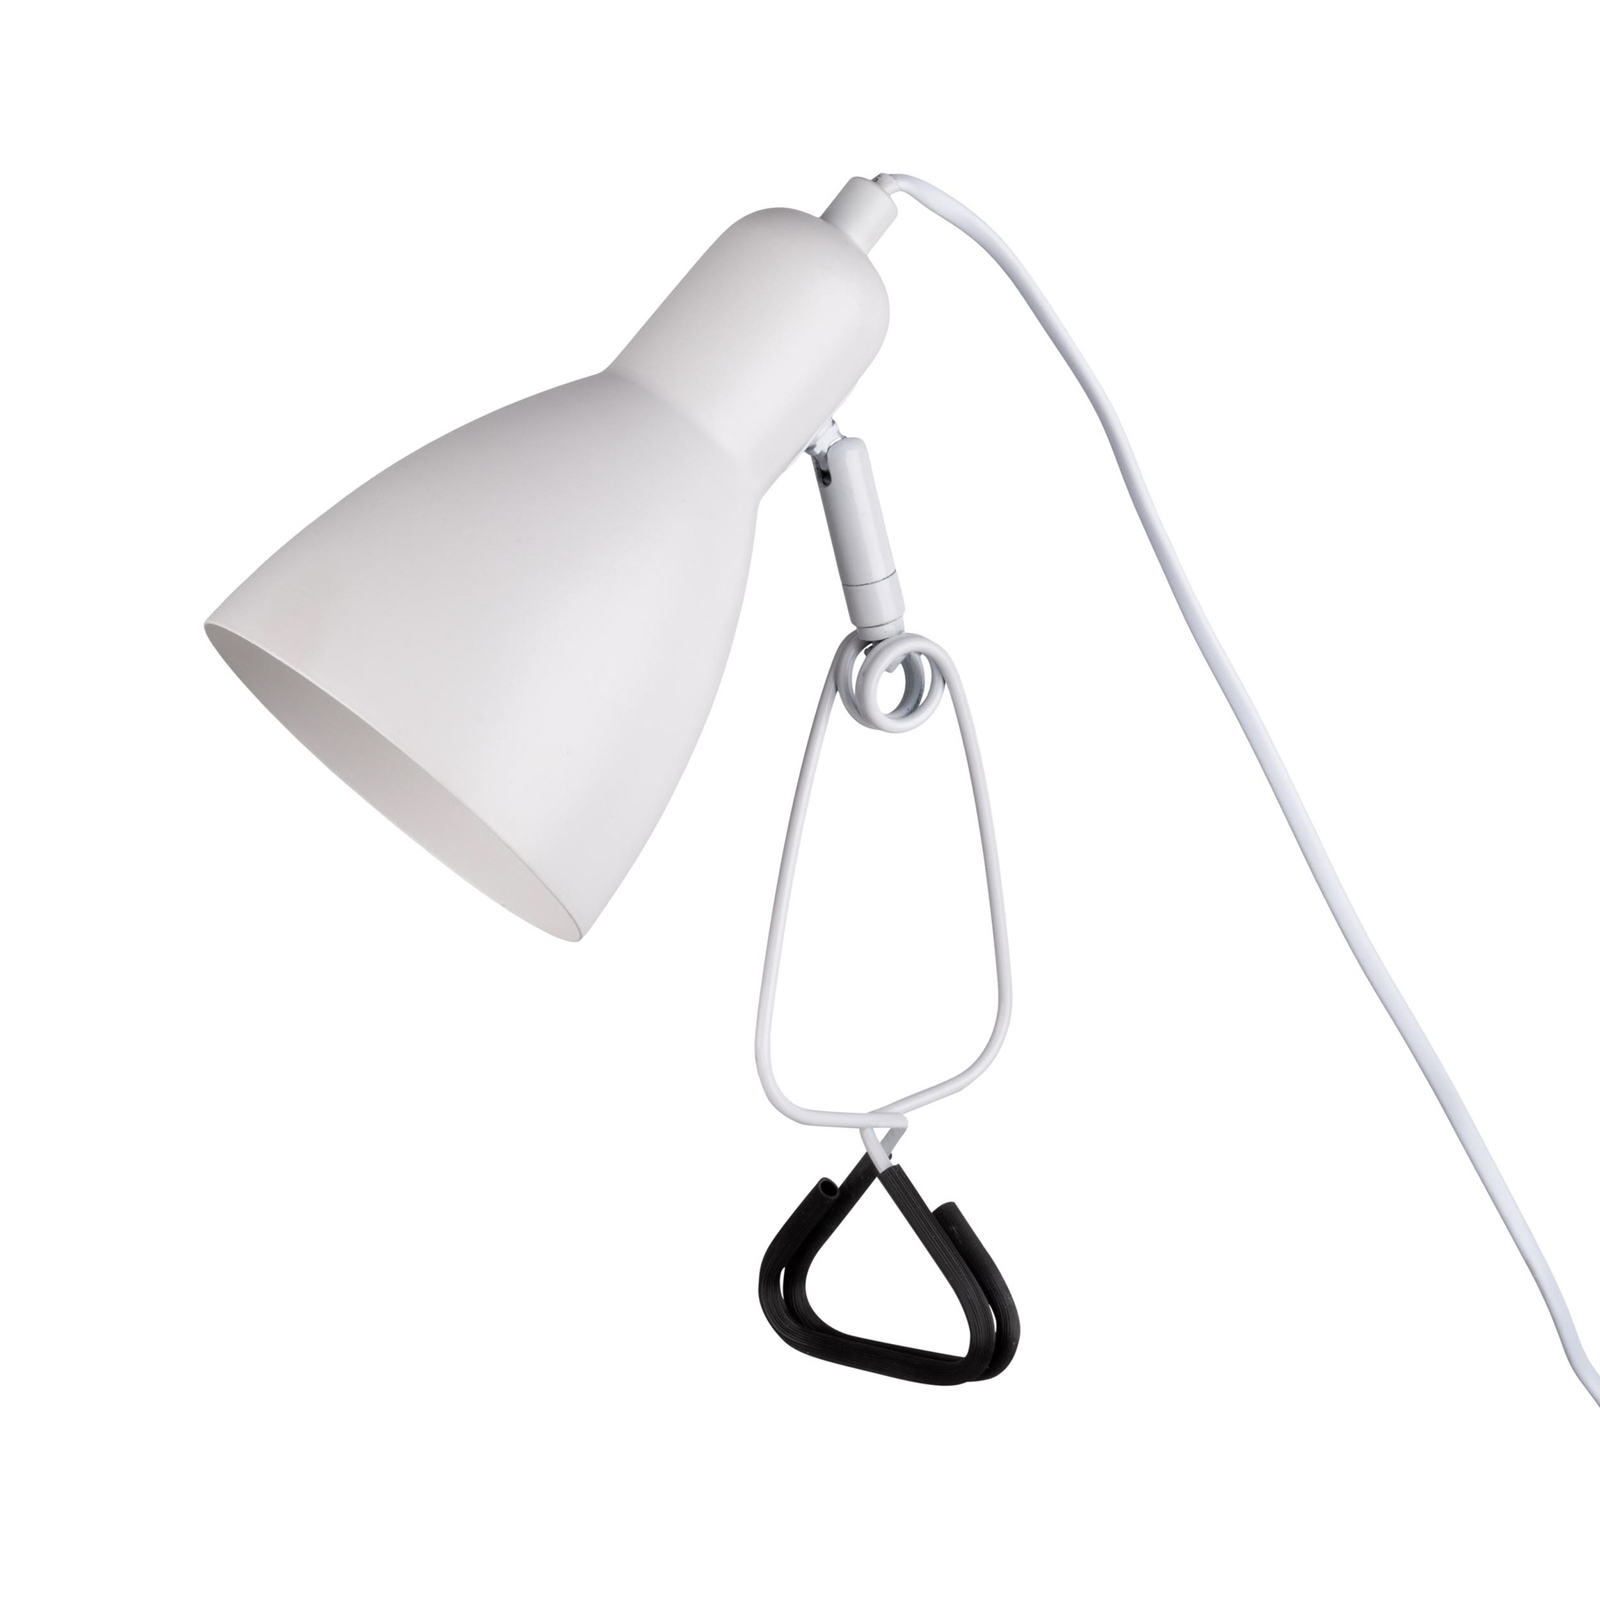 Klemlamp Mara justeerbaar aansluitkabel, wit